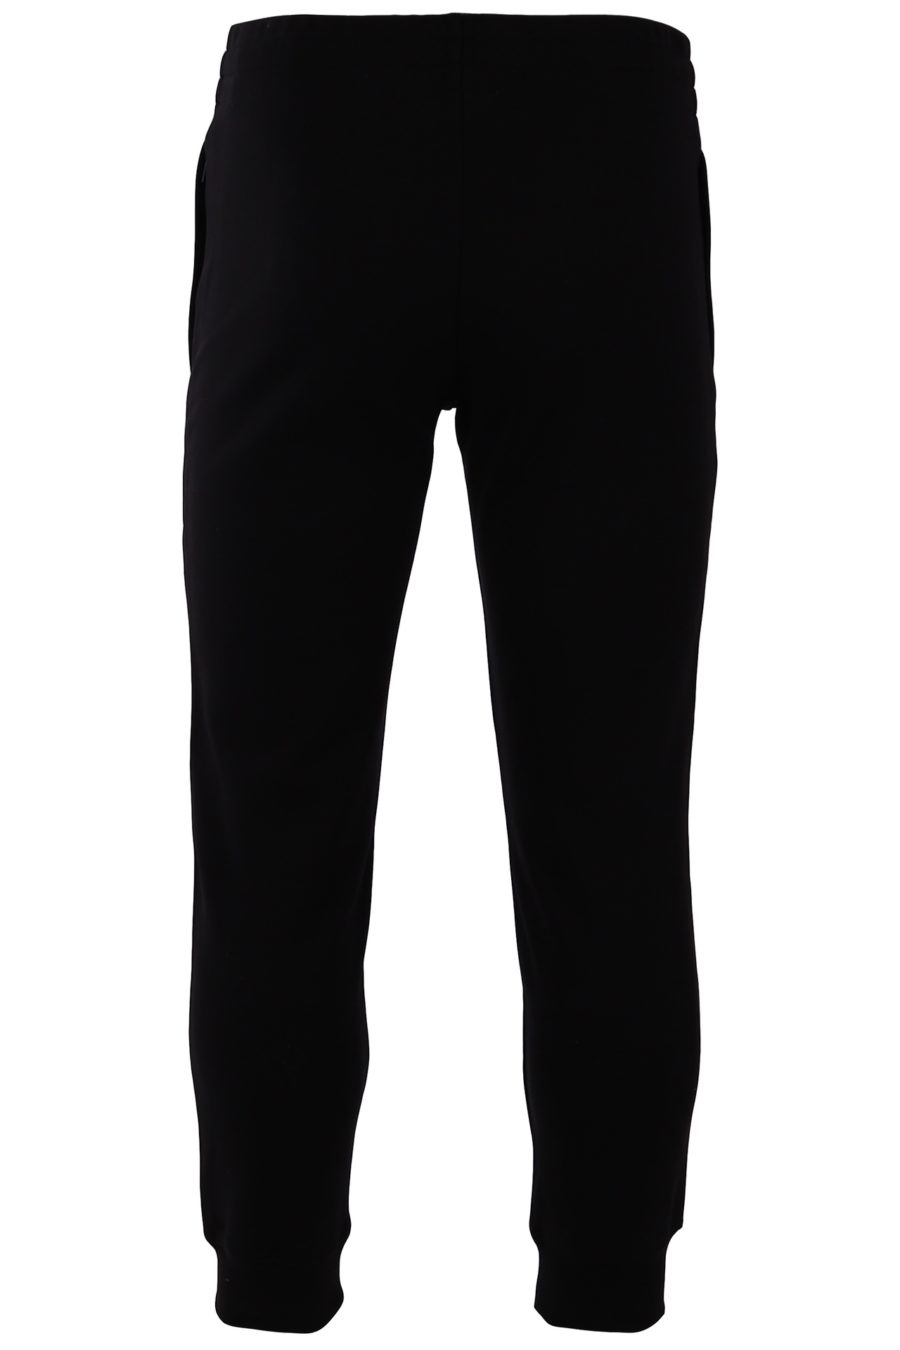 Pantalon Moschino Couture noir avec grand logo - 88c5ef859cbc84e9b59fef2e1b26c2fff8180662